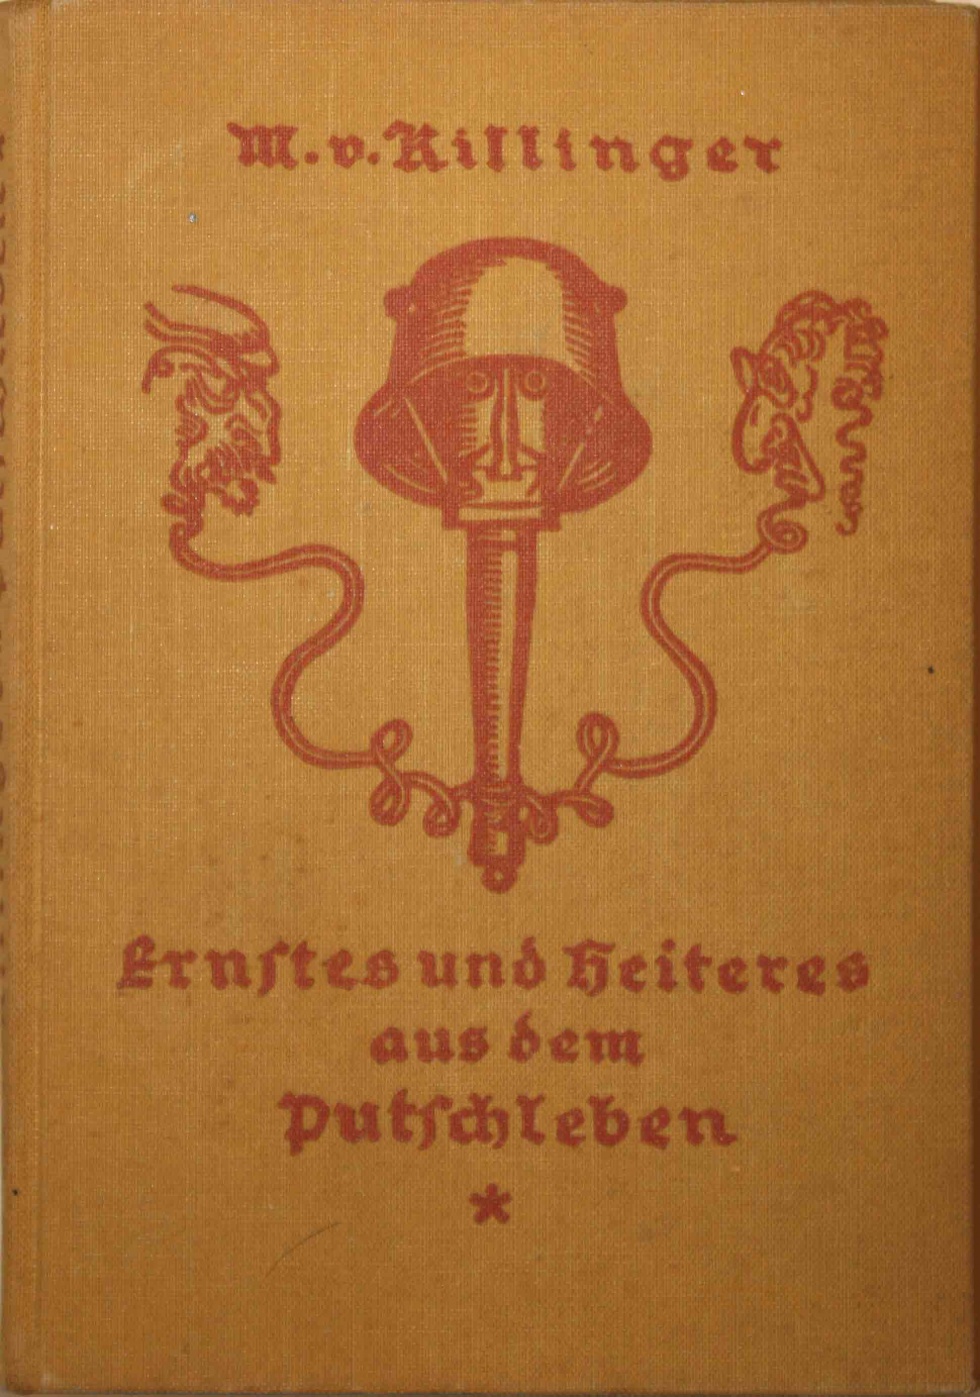 Manfred von Killinger: &quot;Ernstes und Heiteres aus dem Putschleben&quot;, 1933 (Kurt Tucholsky Literaturmuseum CC BY-NC-SA)